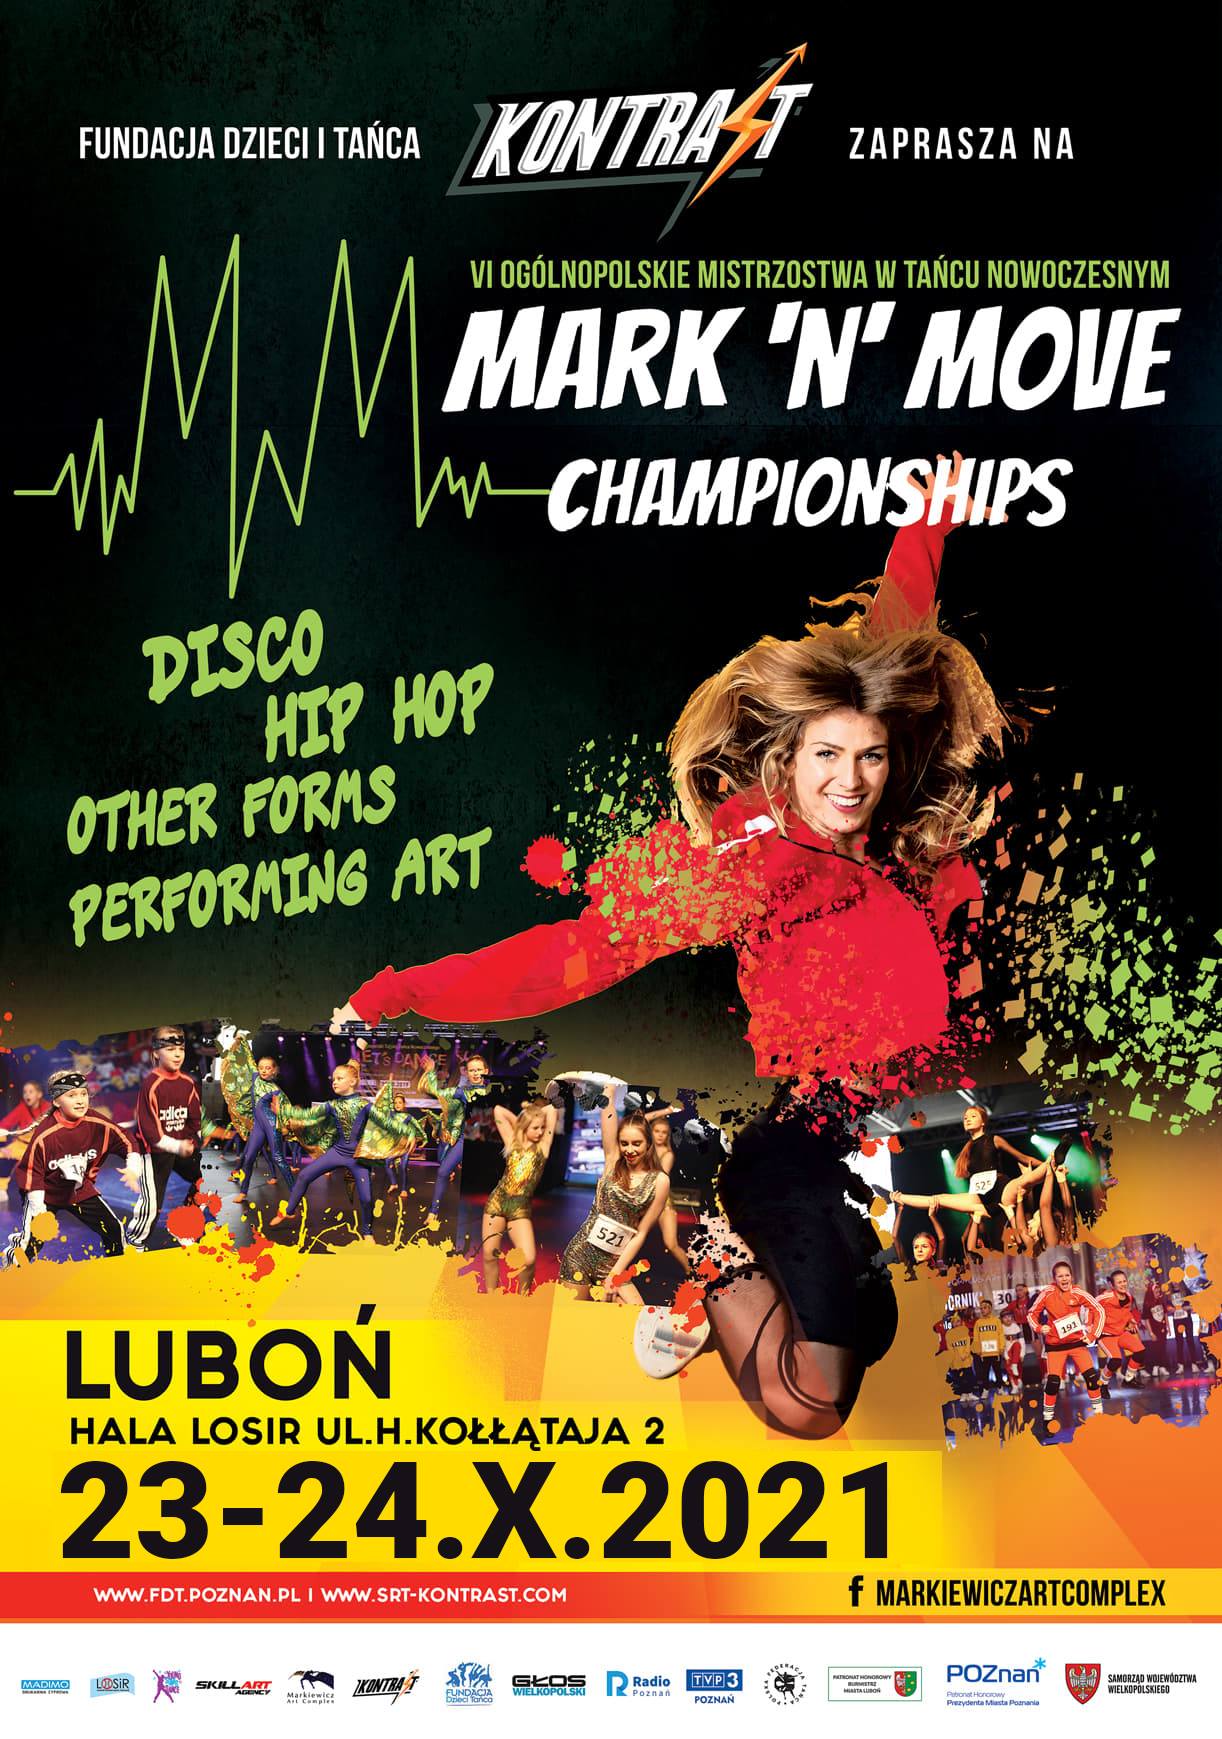 plakat promujacy zawody, widoczna tanczaca kobieta, terminy, kategorie tańca z artykułu